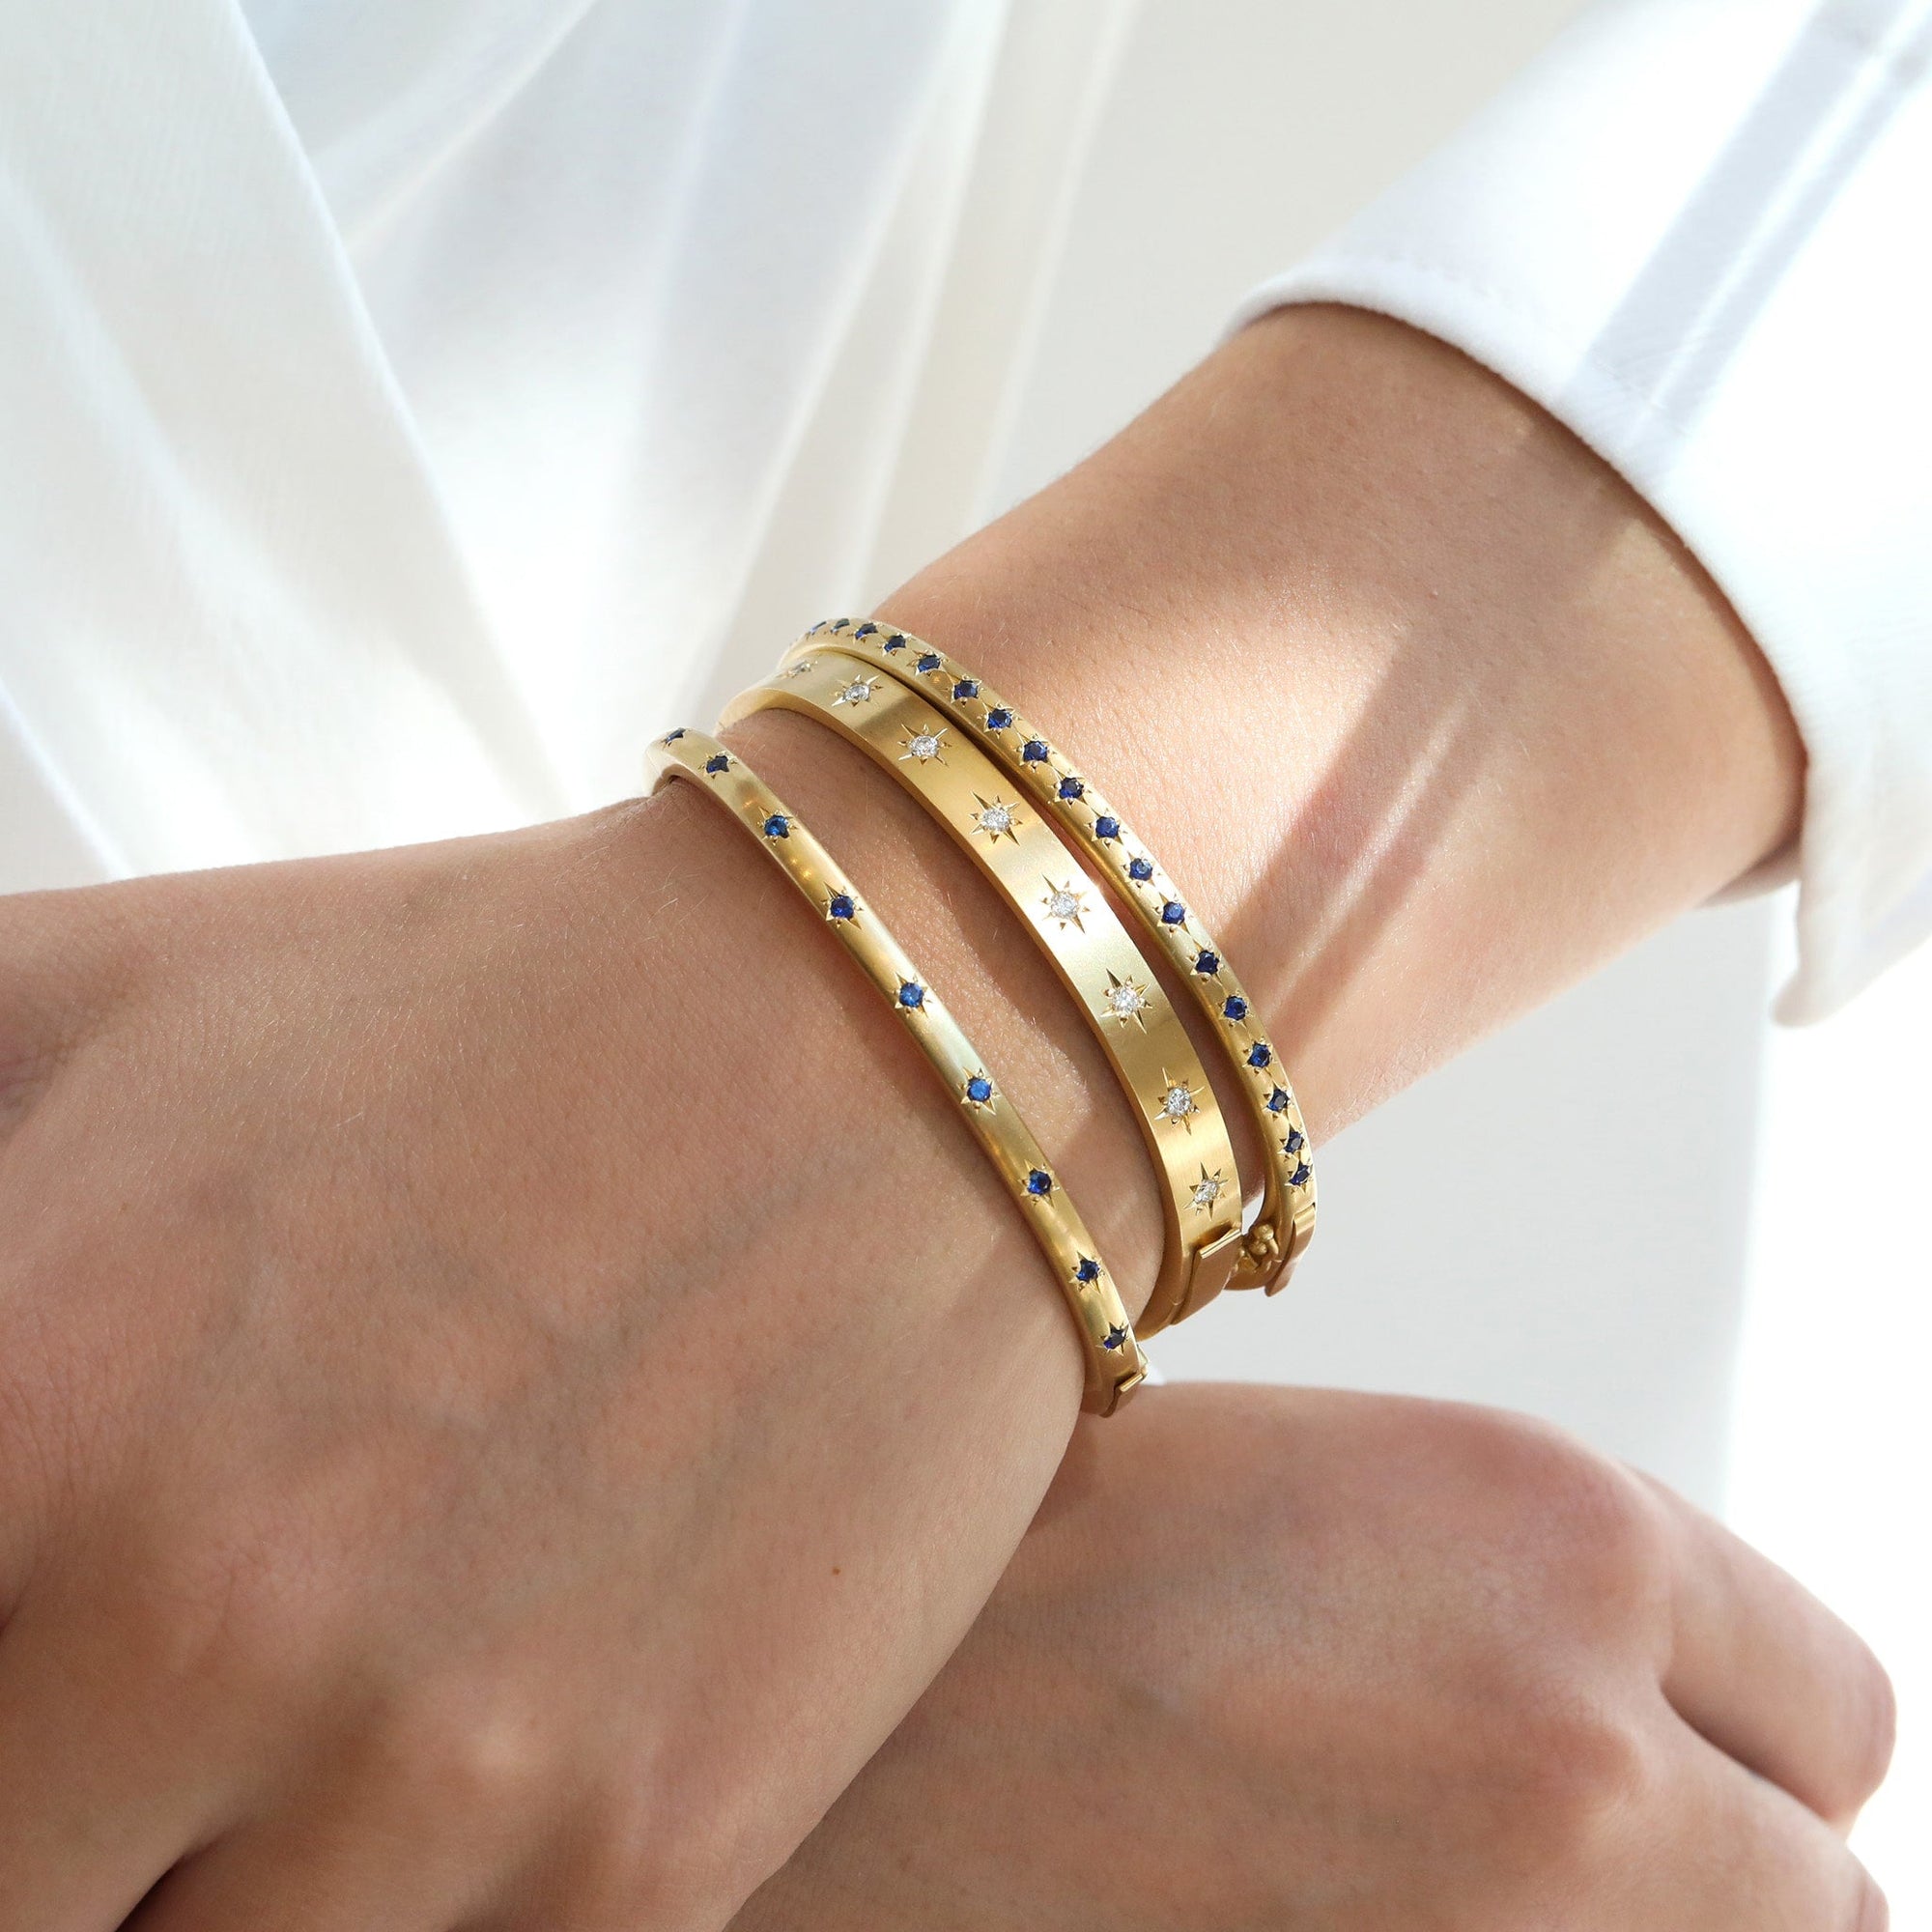 Caroline Ellen Gold Wide Hinged Bangle Bracelet with 18 Star-Set Diamonds